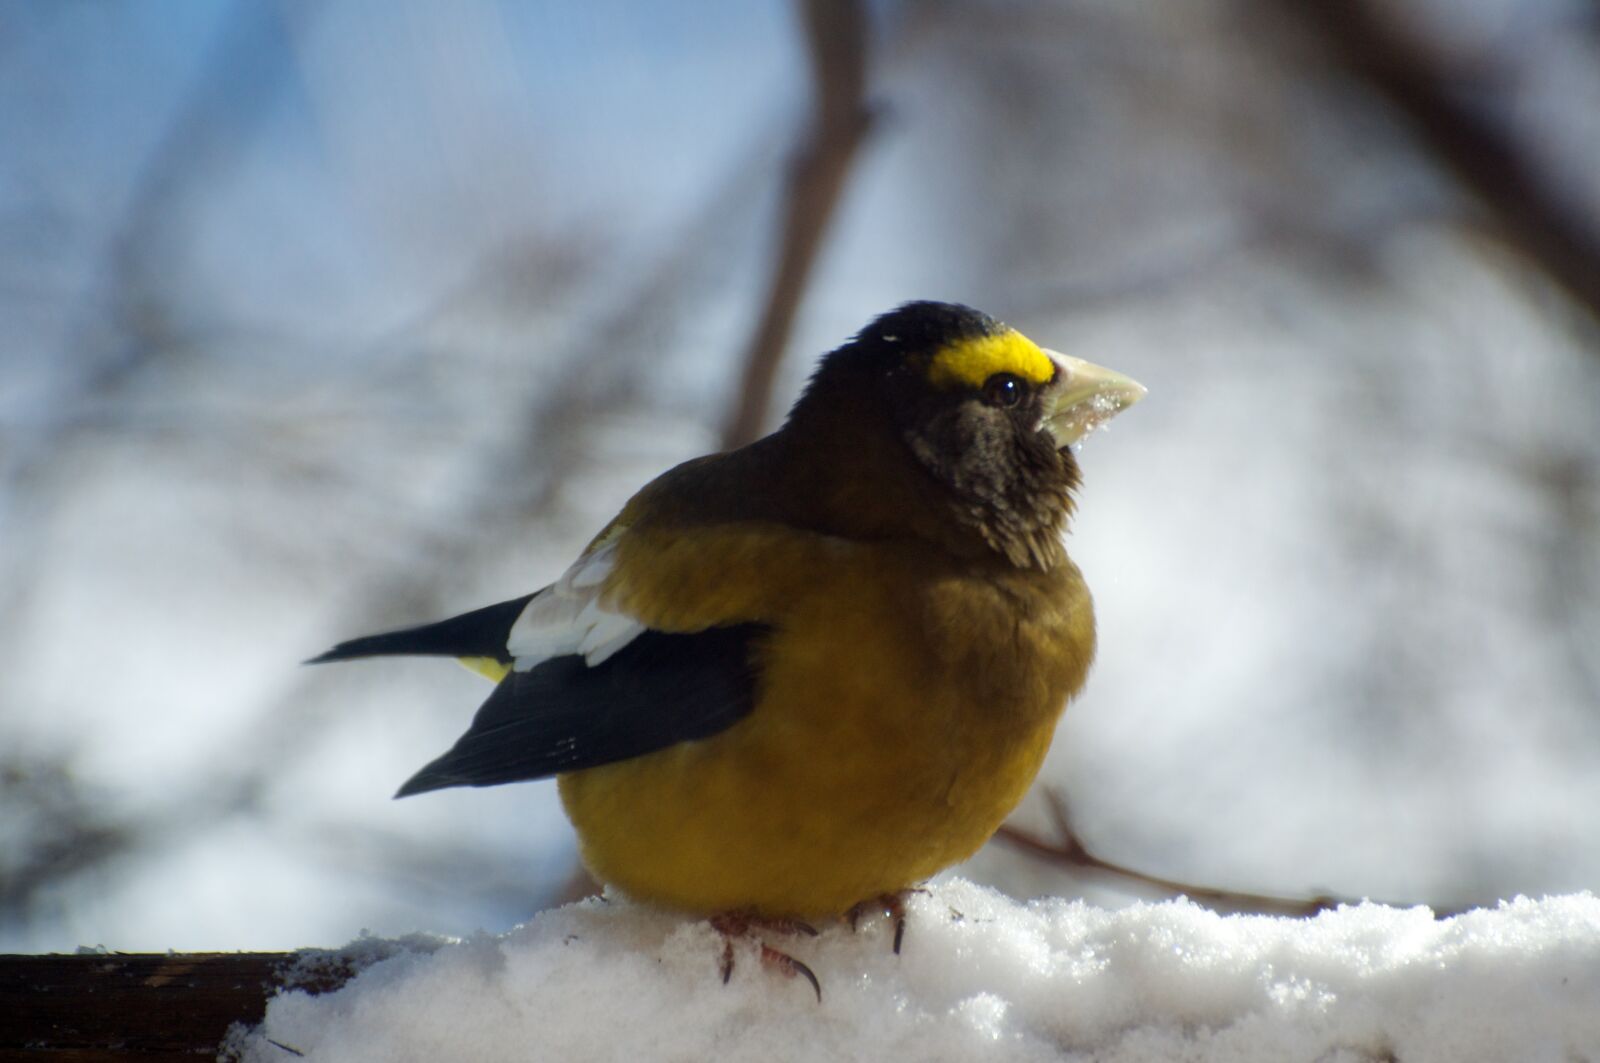 Nikon D90 sample photo. Bird, nature, winter photography